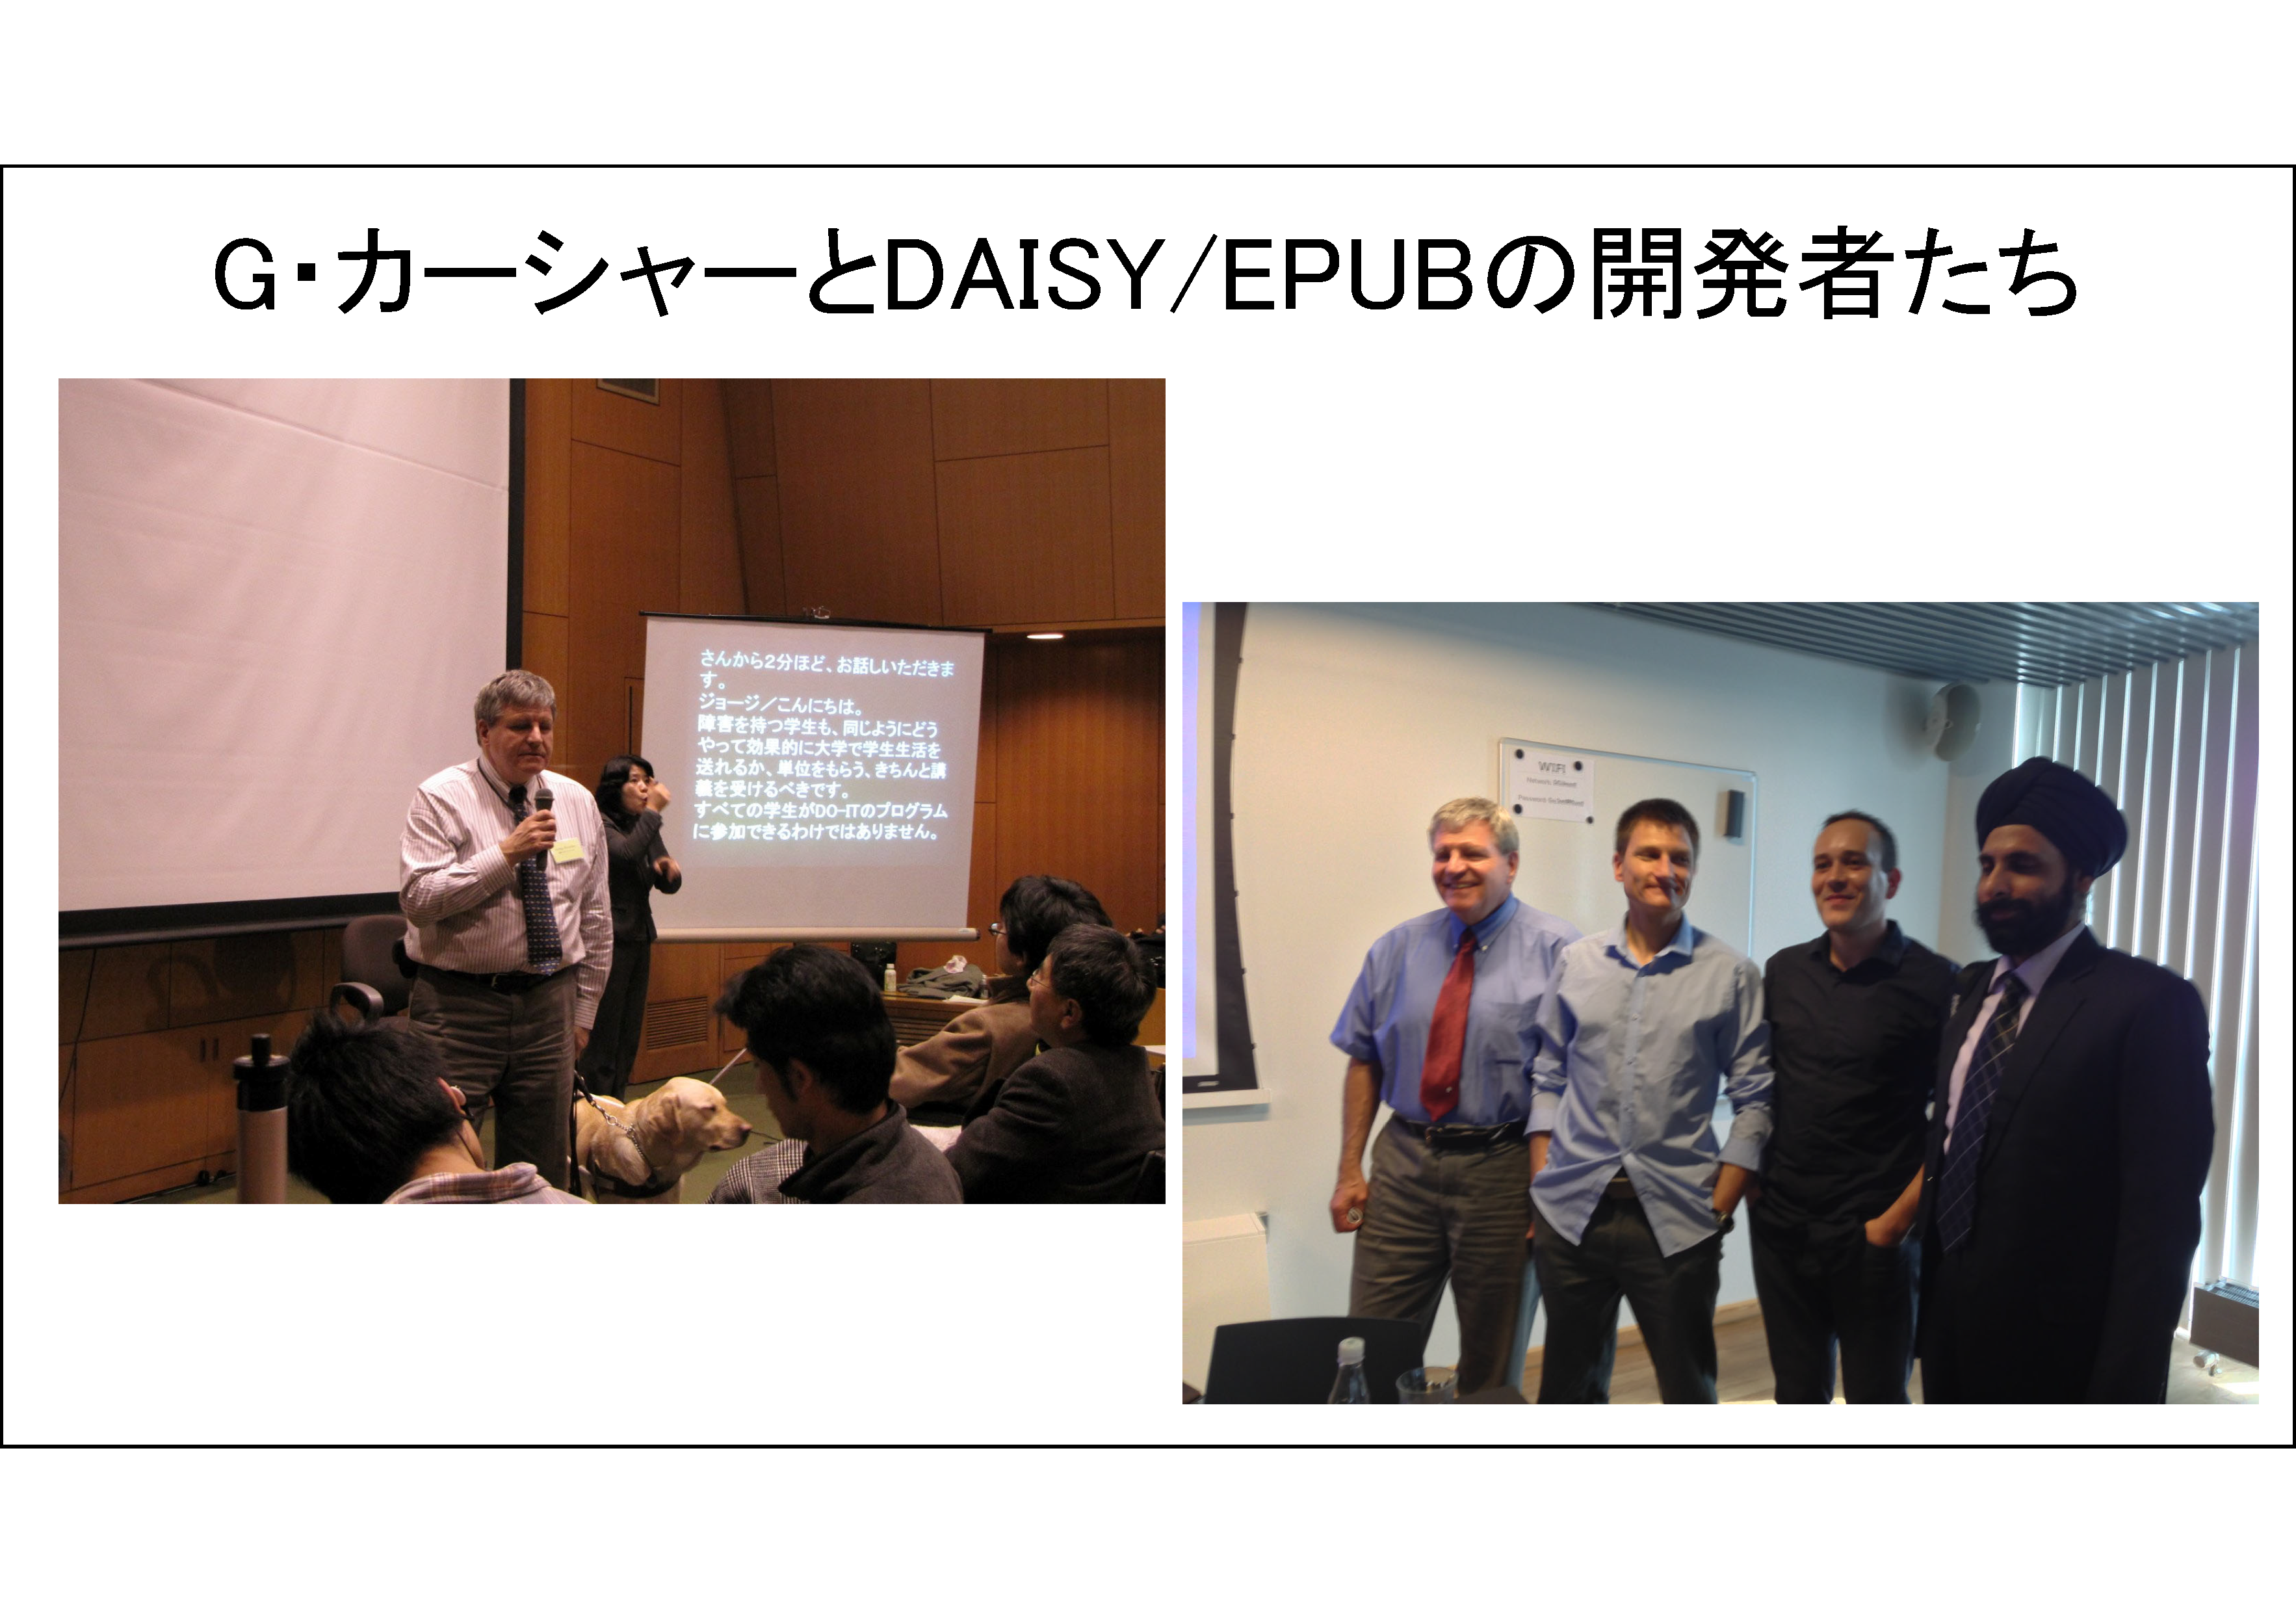 G・カーシャーとDAISY/EPUBの開発者たち
左の写真は、高等教育における障害学生支援に関するセミナー「日米のネットワーク構築をめざして」（2009年2月8日　東大山上会館）で講演するDAISYコンソーシアム事務局長G・カーシャーが写っている。右の写真は、2013年6月DAISYコンソーシアム理事会（コペンハーゲン）に出席した開発者たち、左から、ジョージ、ダニエル、ロマン、アブニーシュが写っている